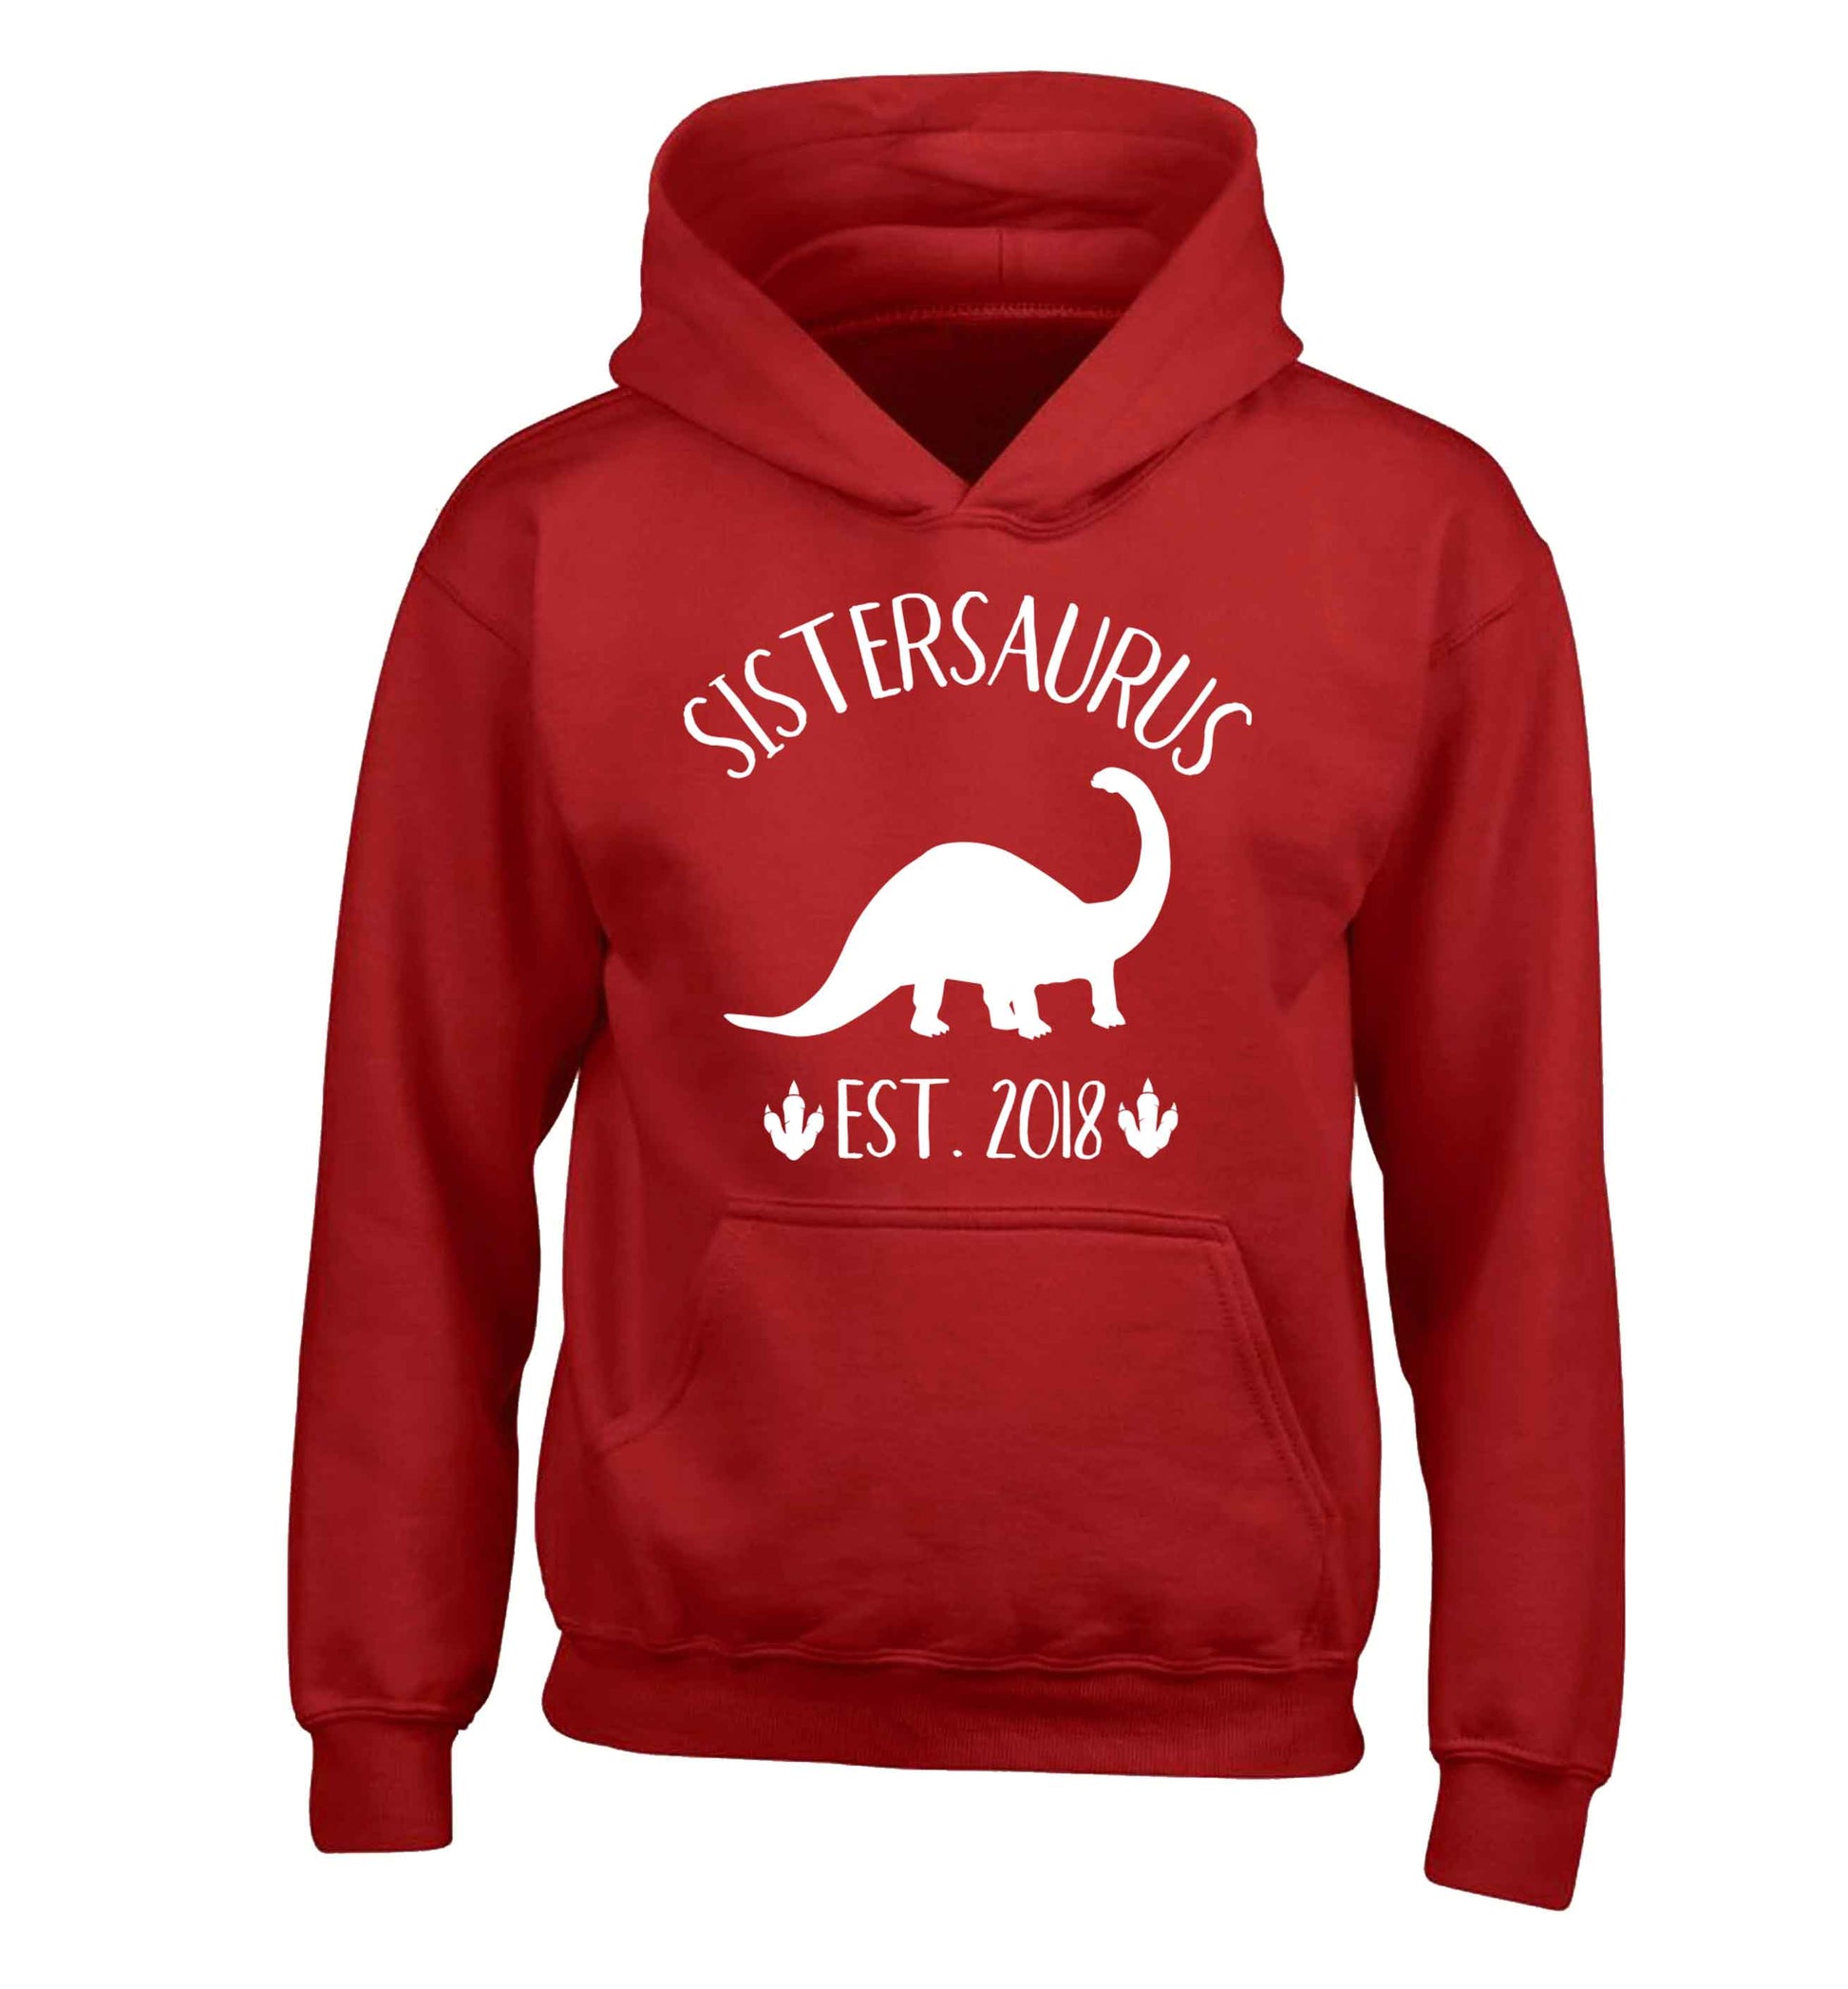 Personalised sistersaurus since (custom date) children's red hoodie 12-13 Years